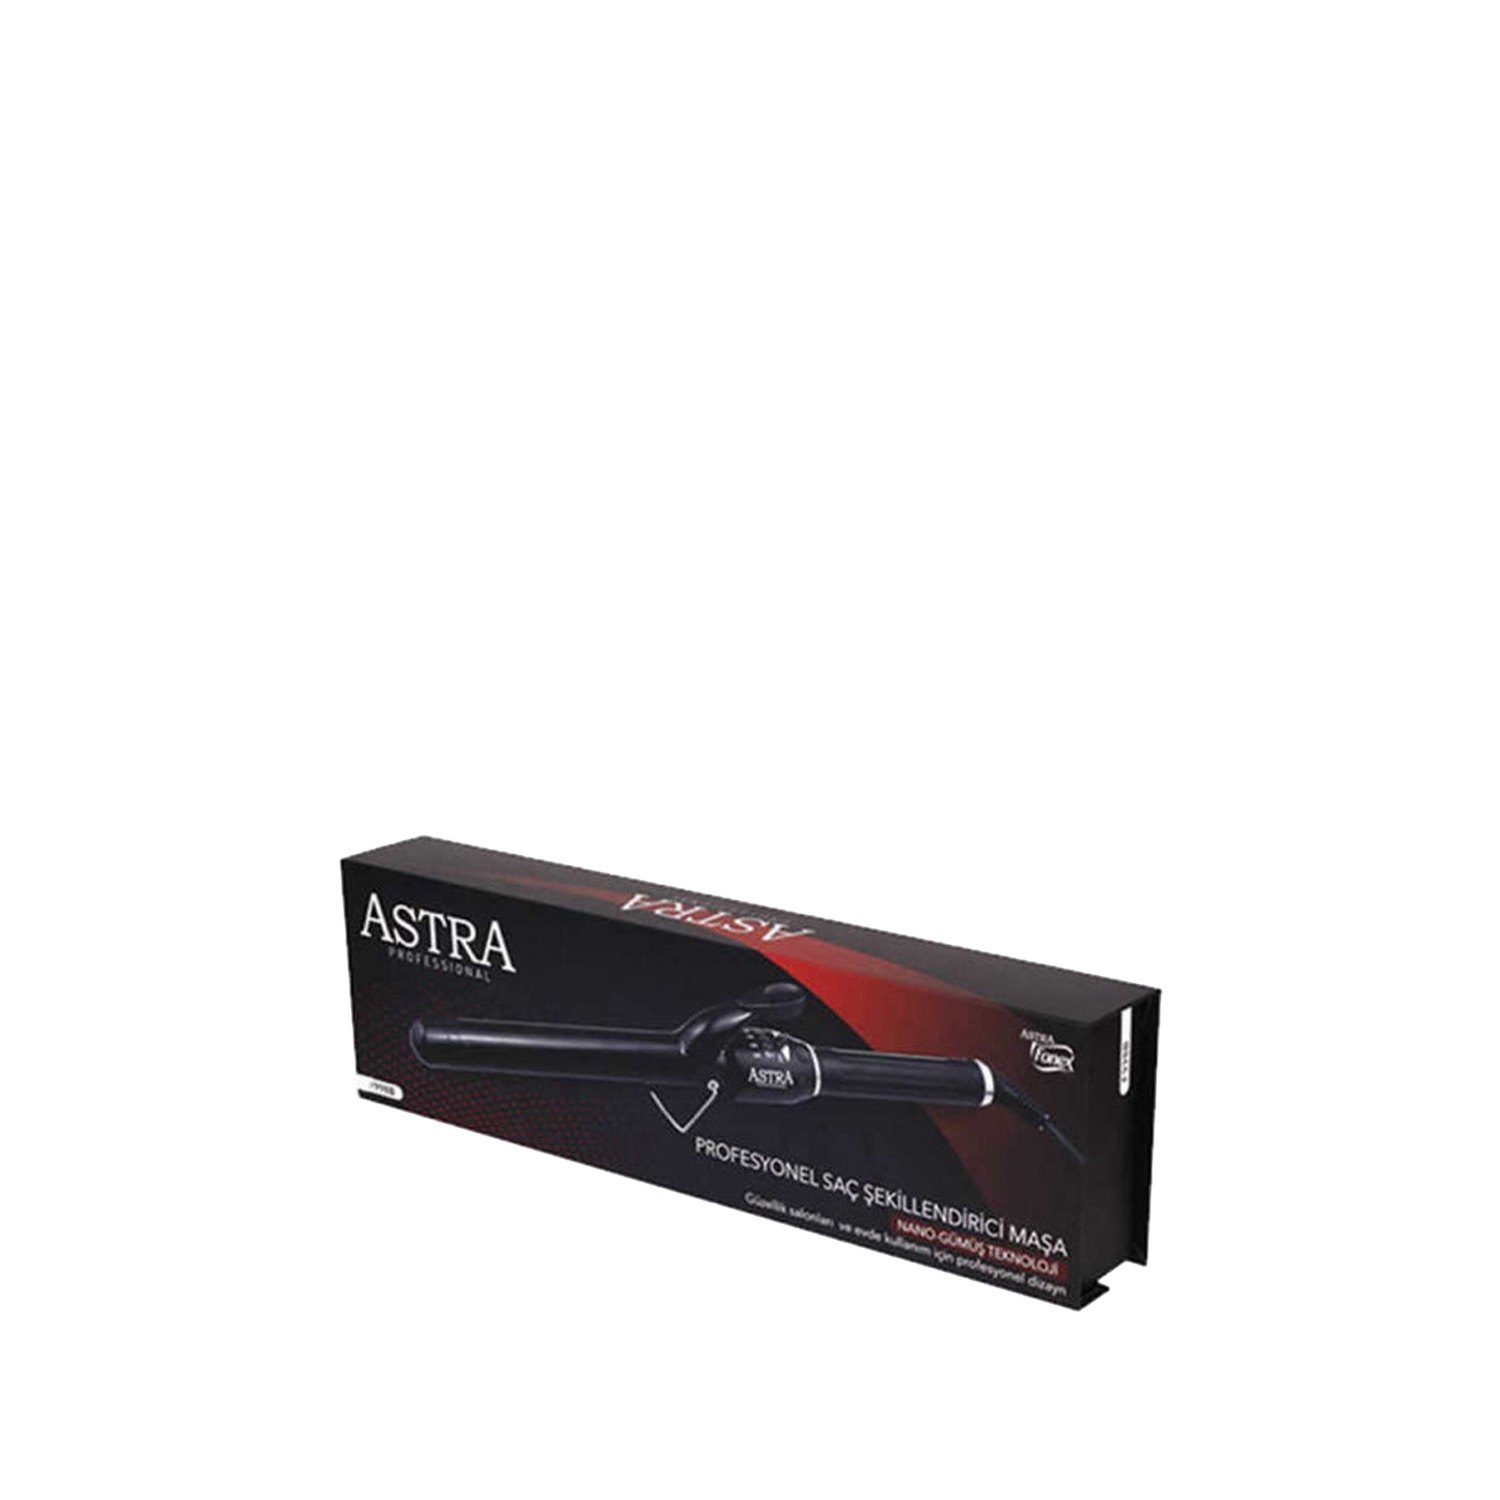 Astra Professional Saç Şekillendirici Maşa F998B 19mm